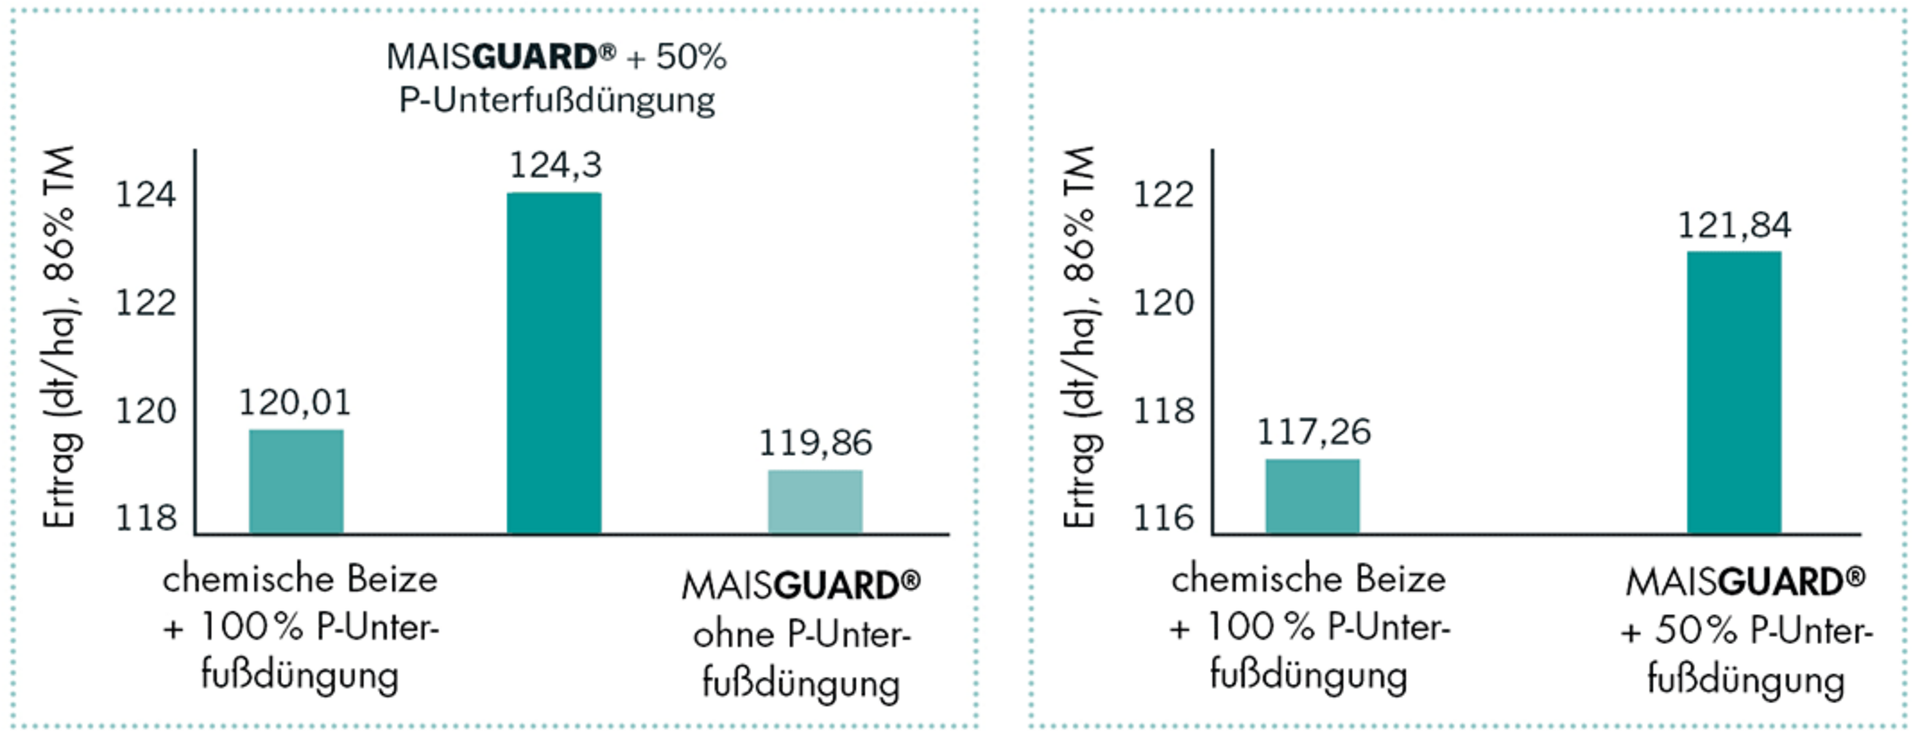 Die Ergebnisse aus Westerkappeln, 2019, zeigen eine reduzierte P-Unterfußdüngung bei Verwendung von MAISGUARD® im Vergelcih zu einer chemischen Beize bei Mais.